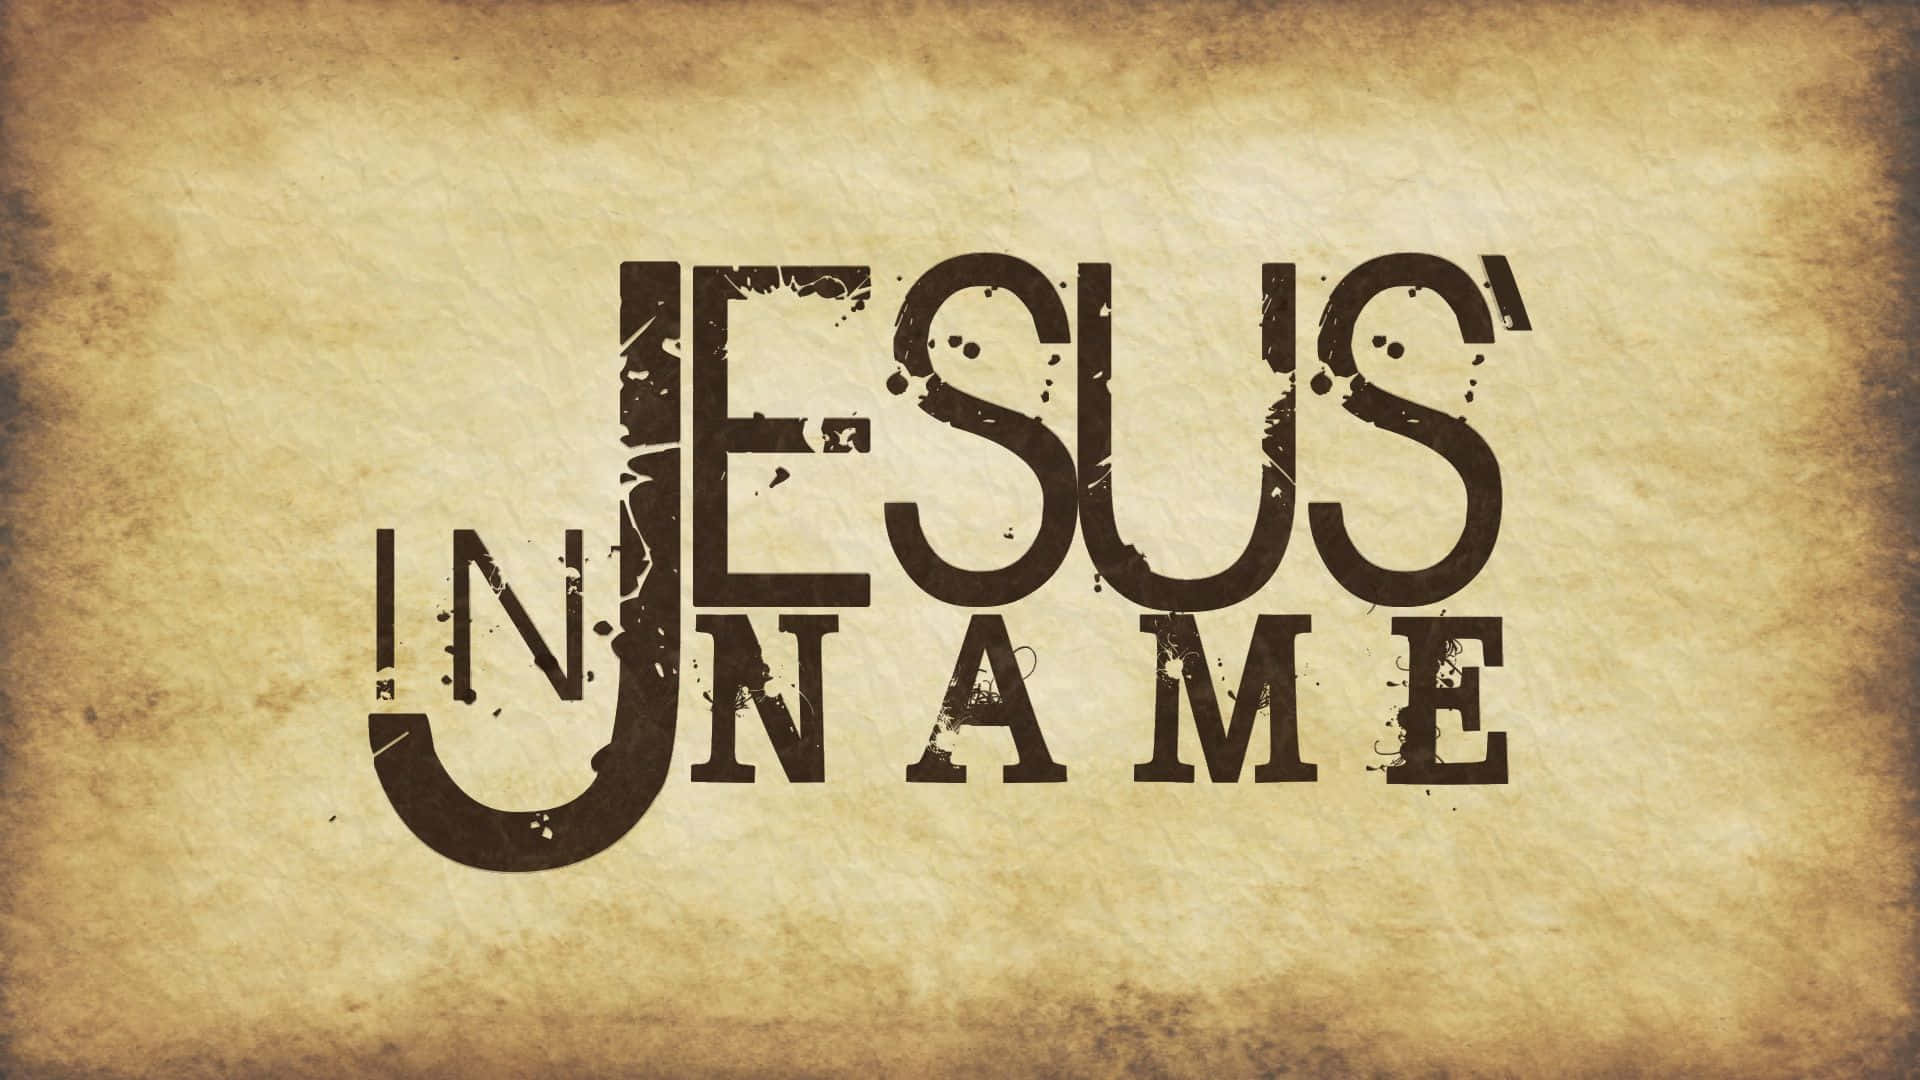 Rejoice in the name of Jesus Wallpaper